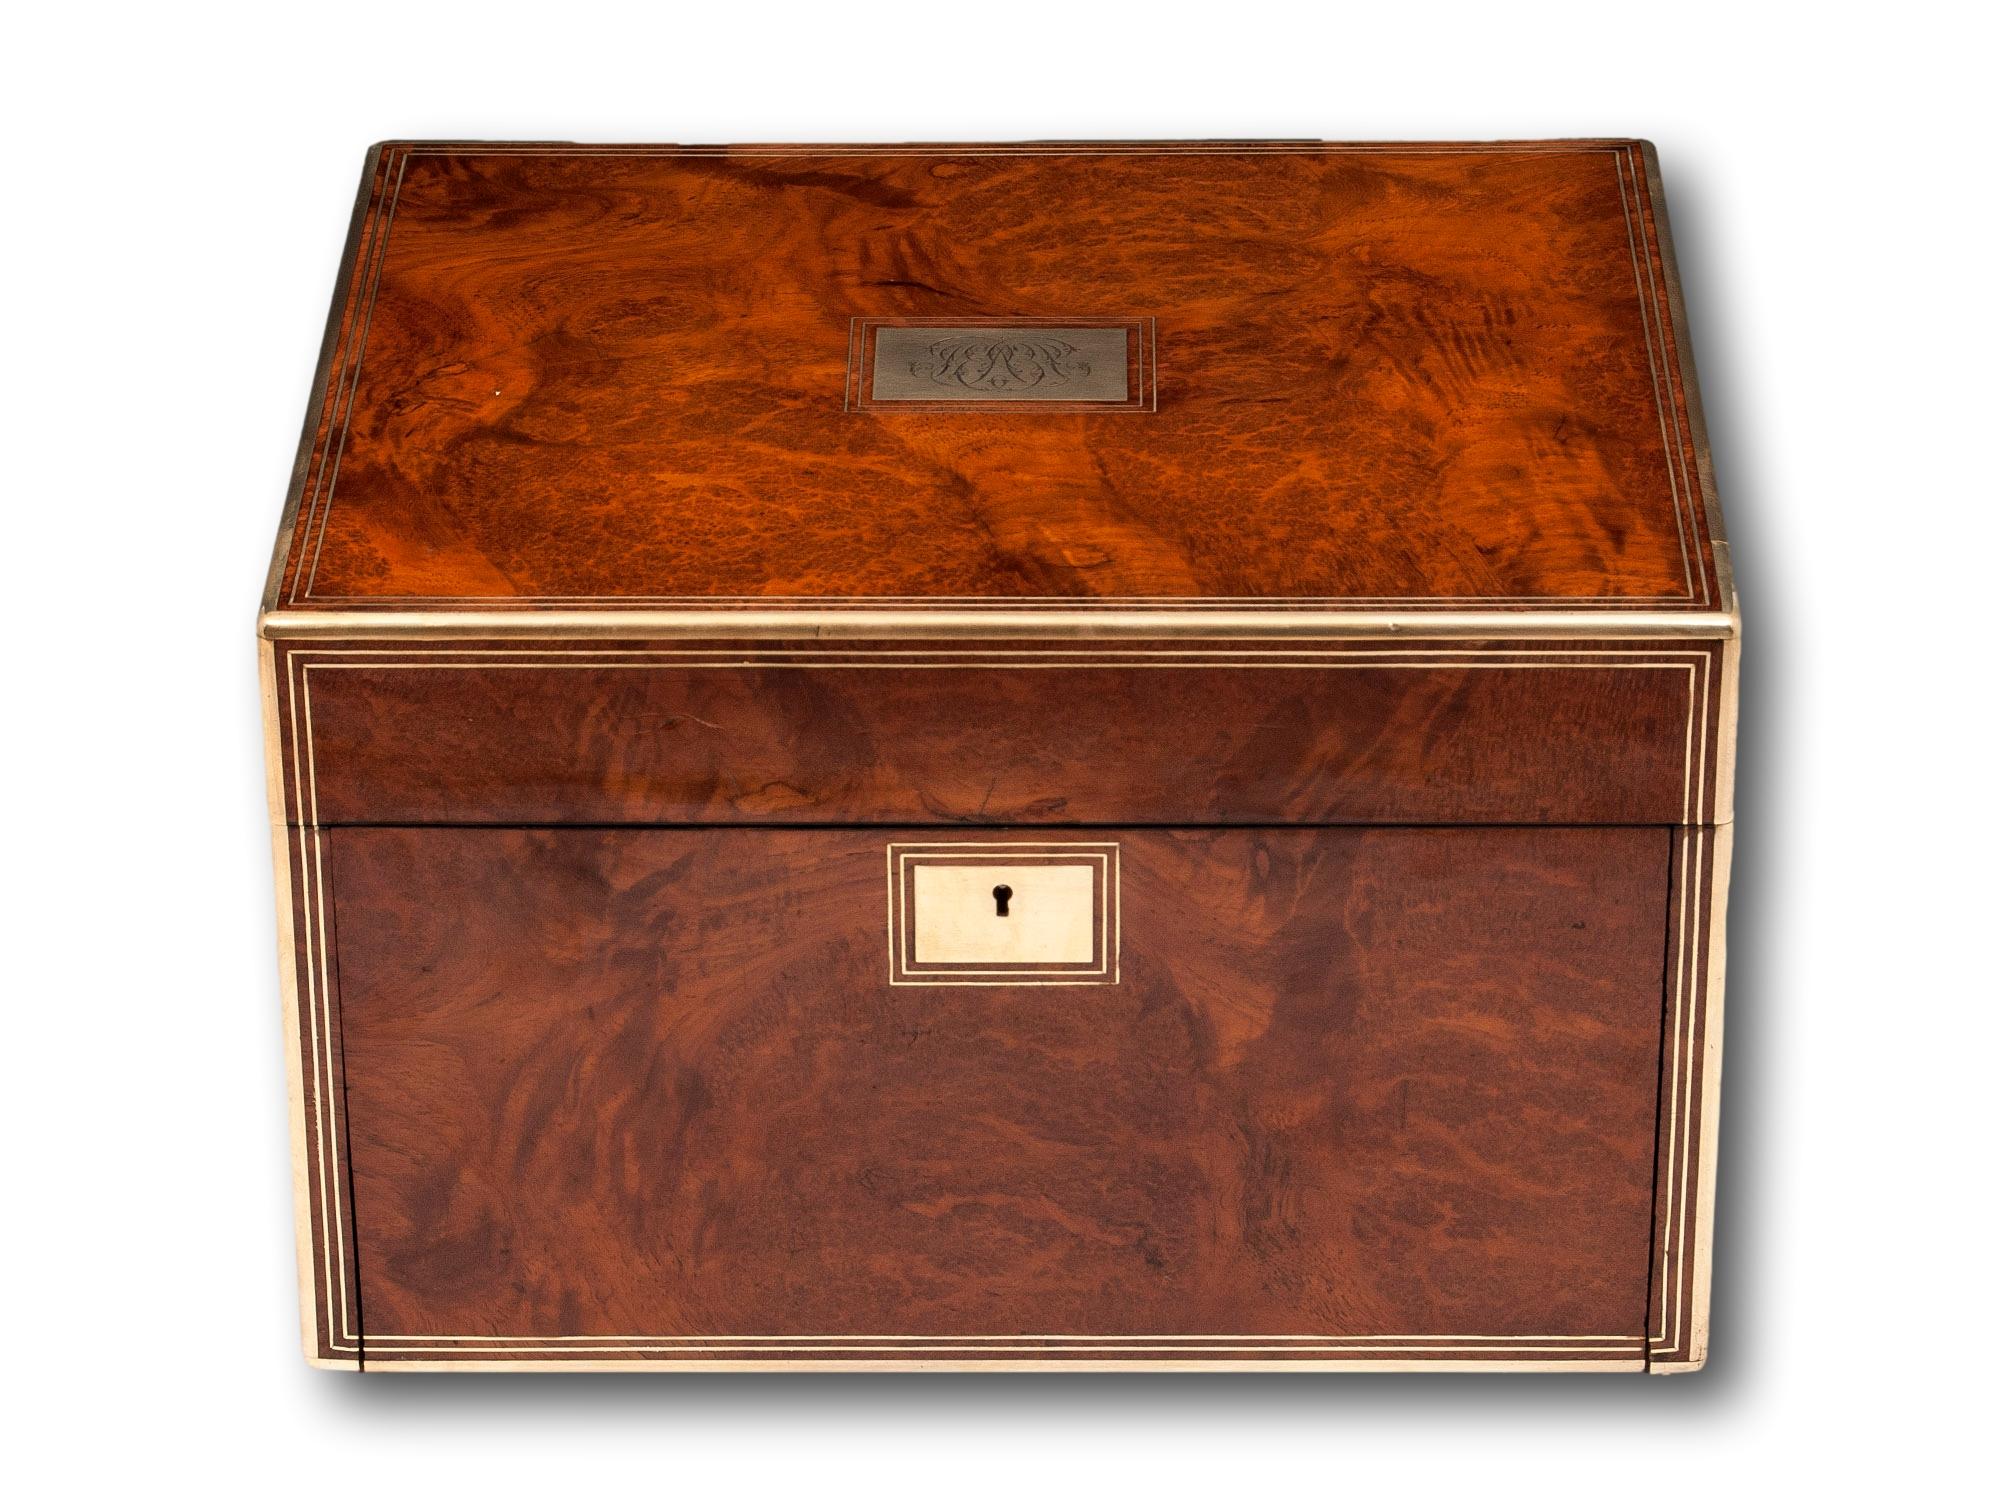 Antikes Silber vergoldet Vanity Box furniert in atemberaubendem Amboyna.

Wir freuen uns, Ihnen diesen wunderschönen, mit Amboyna furnierten Waschtischunterschrank aus unserem Sortiment anbieten zu können. Das Gehäuse mit Messingeinfassung und